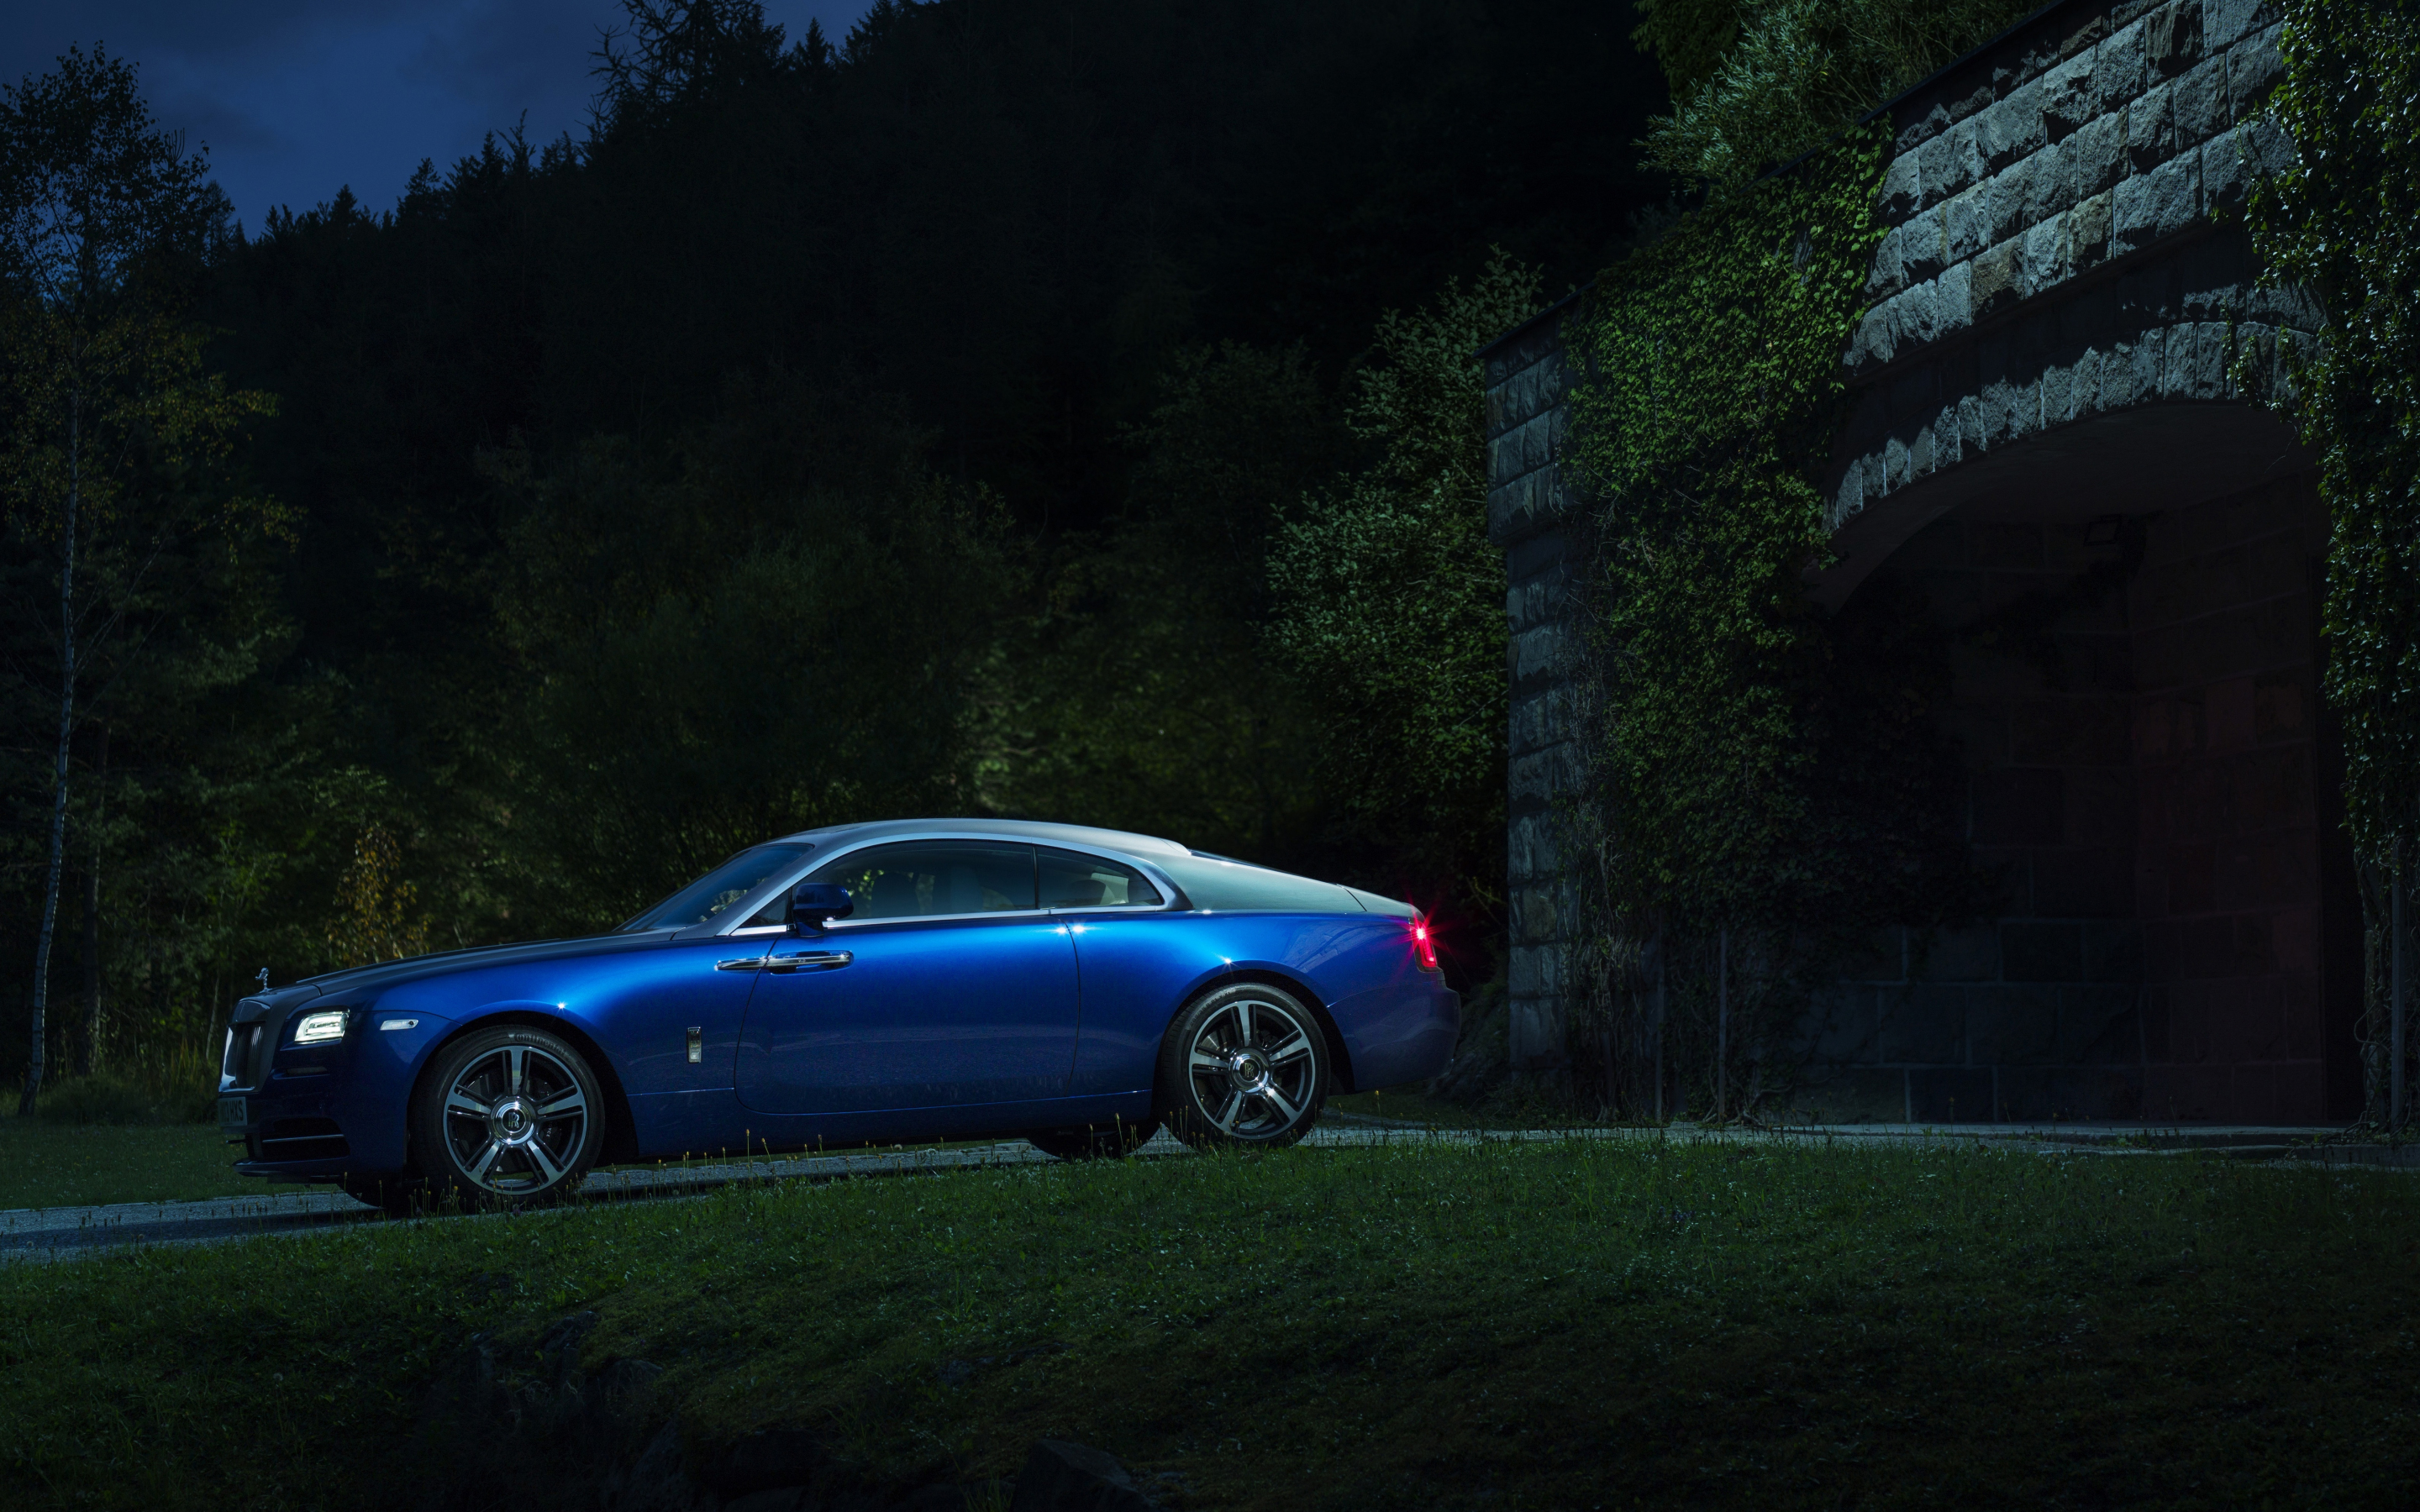 Blue, Rolls-Royce Wraith, luxury car, 2880x1800 wallpaper